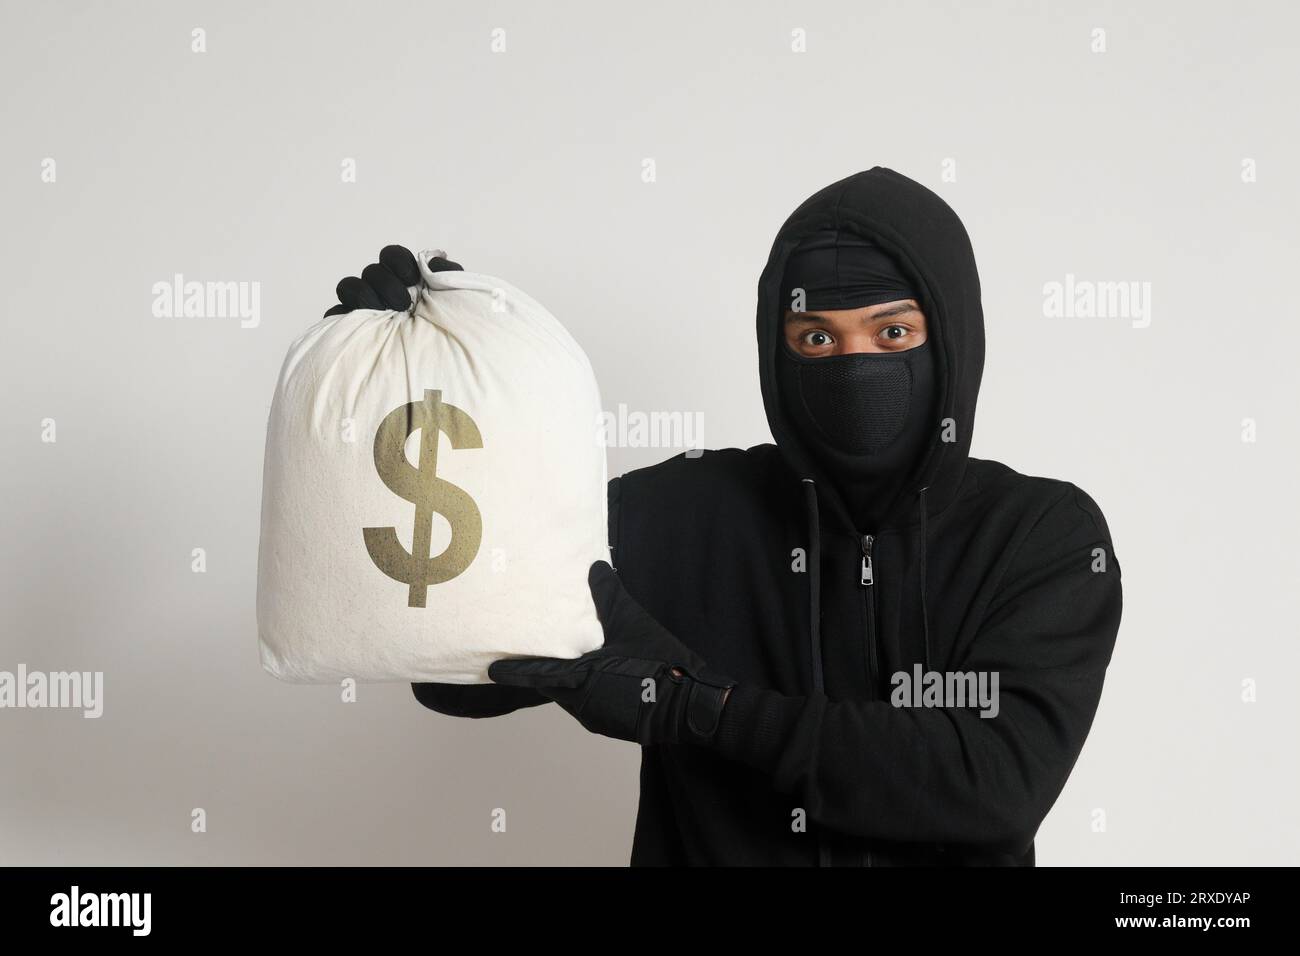 Misterioso ladro di rapinatori che indossa una felpa nera con cappuccio e una maschera e porta con sé una borsa piena di soldi. Immagine isolata su sfondo grigio Foto Stock